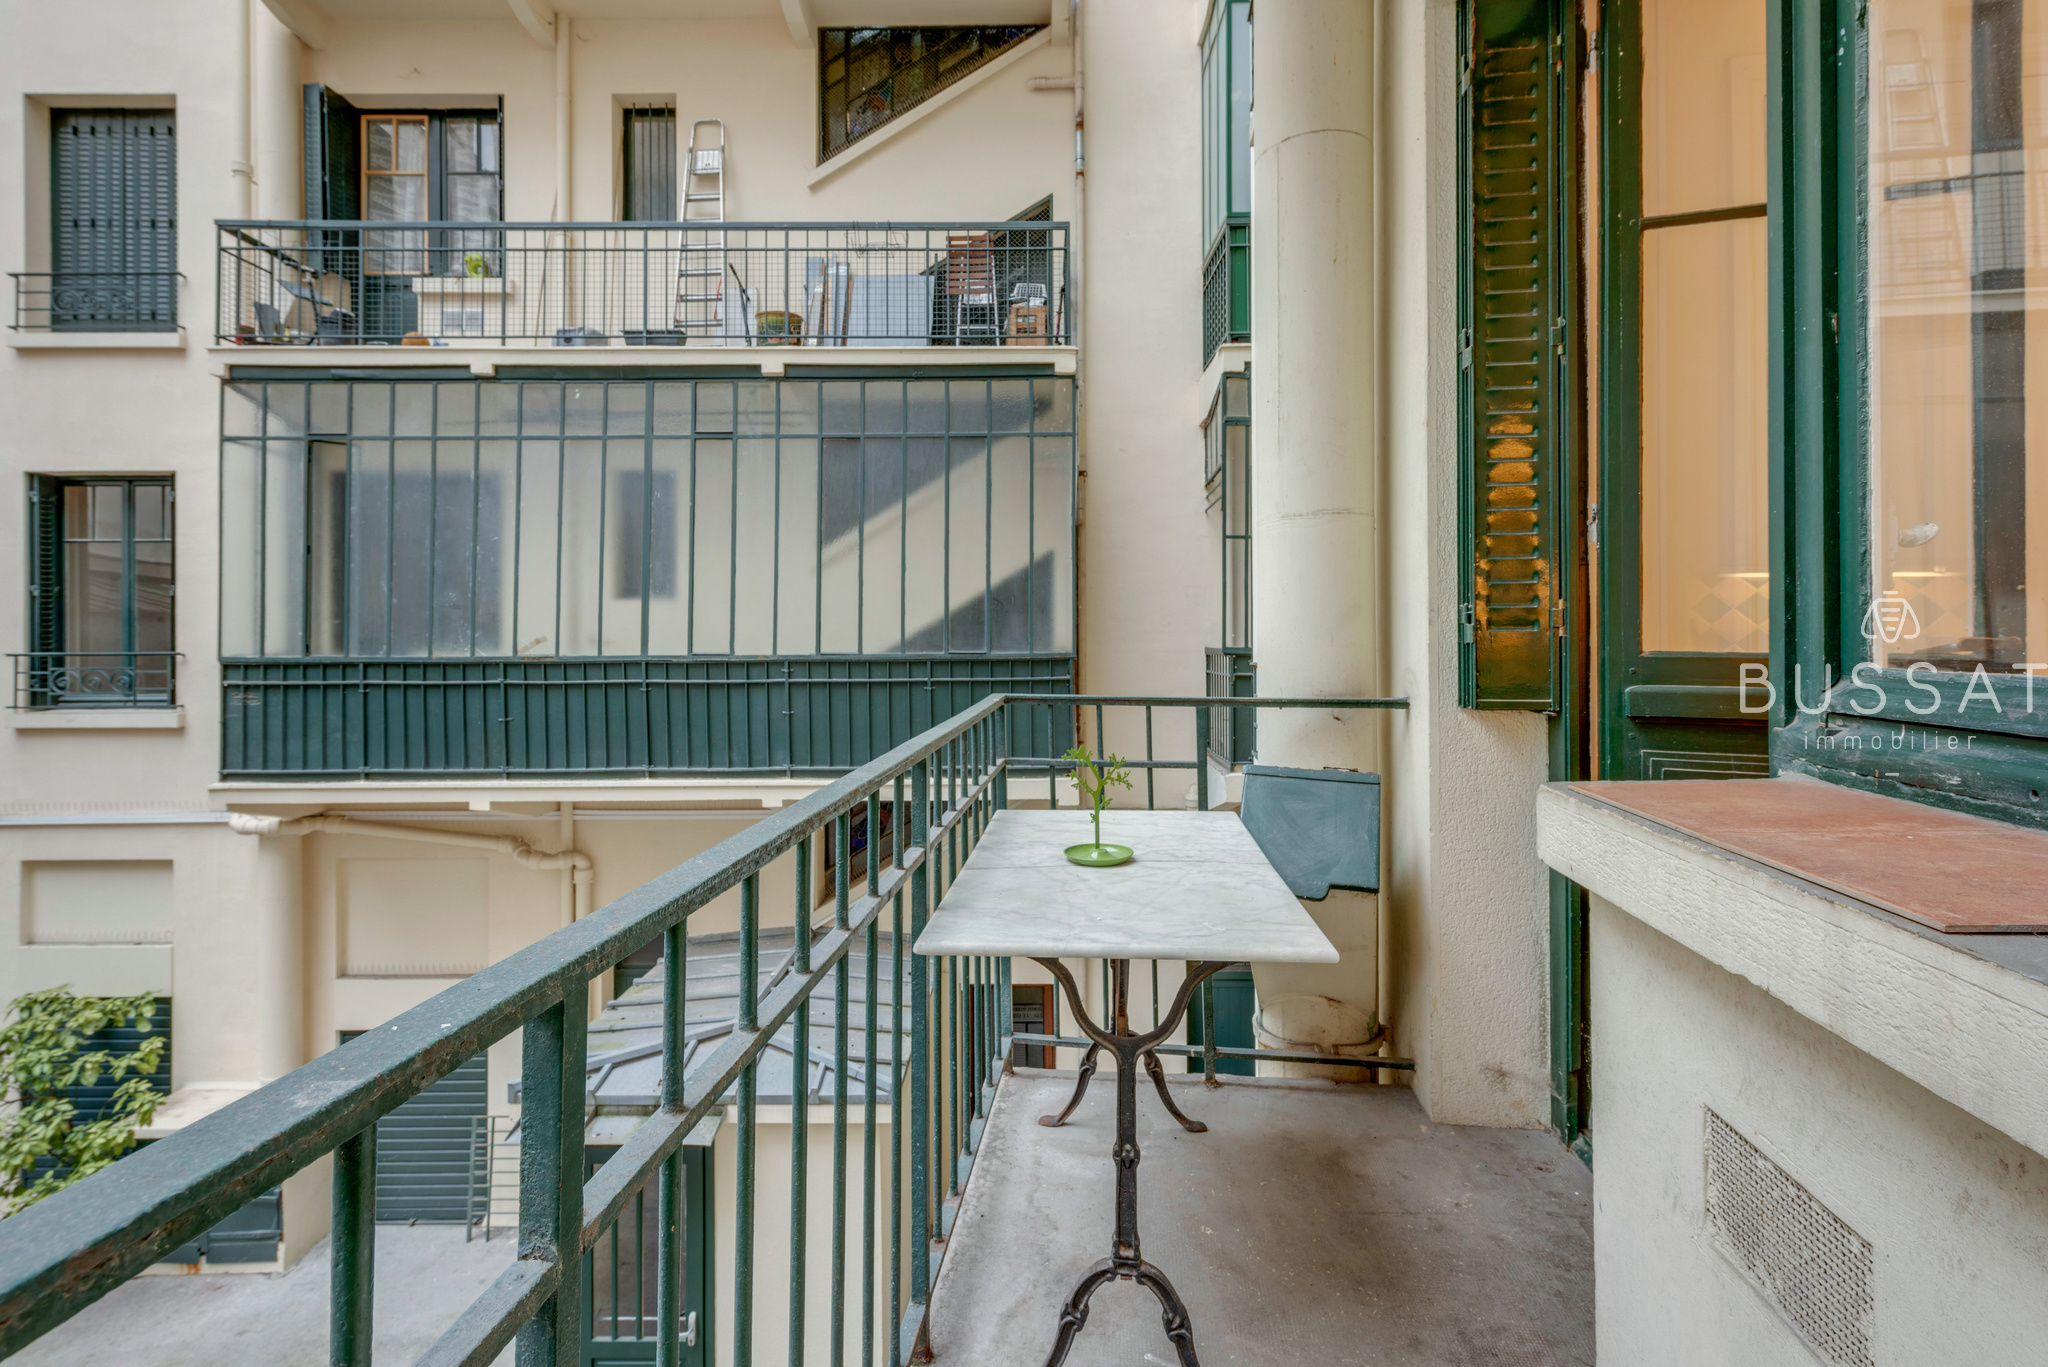 vente Vente appartement  5 pi ces 113 7 m2 balcon  